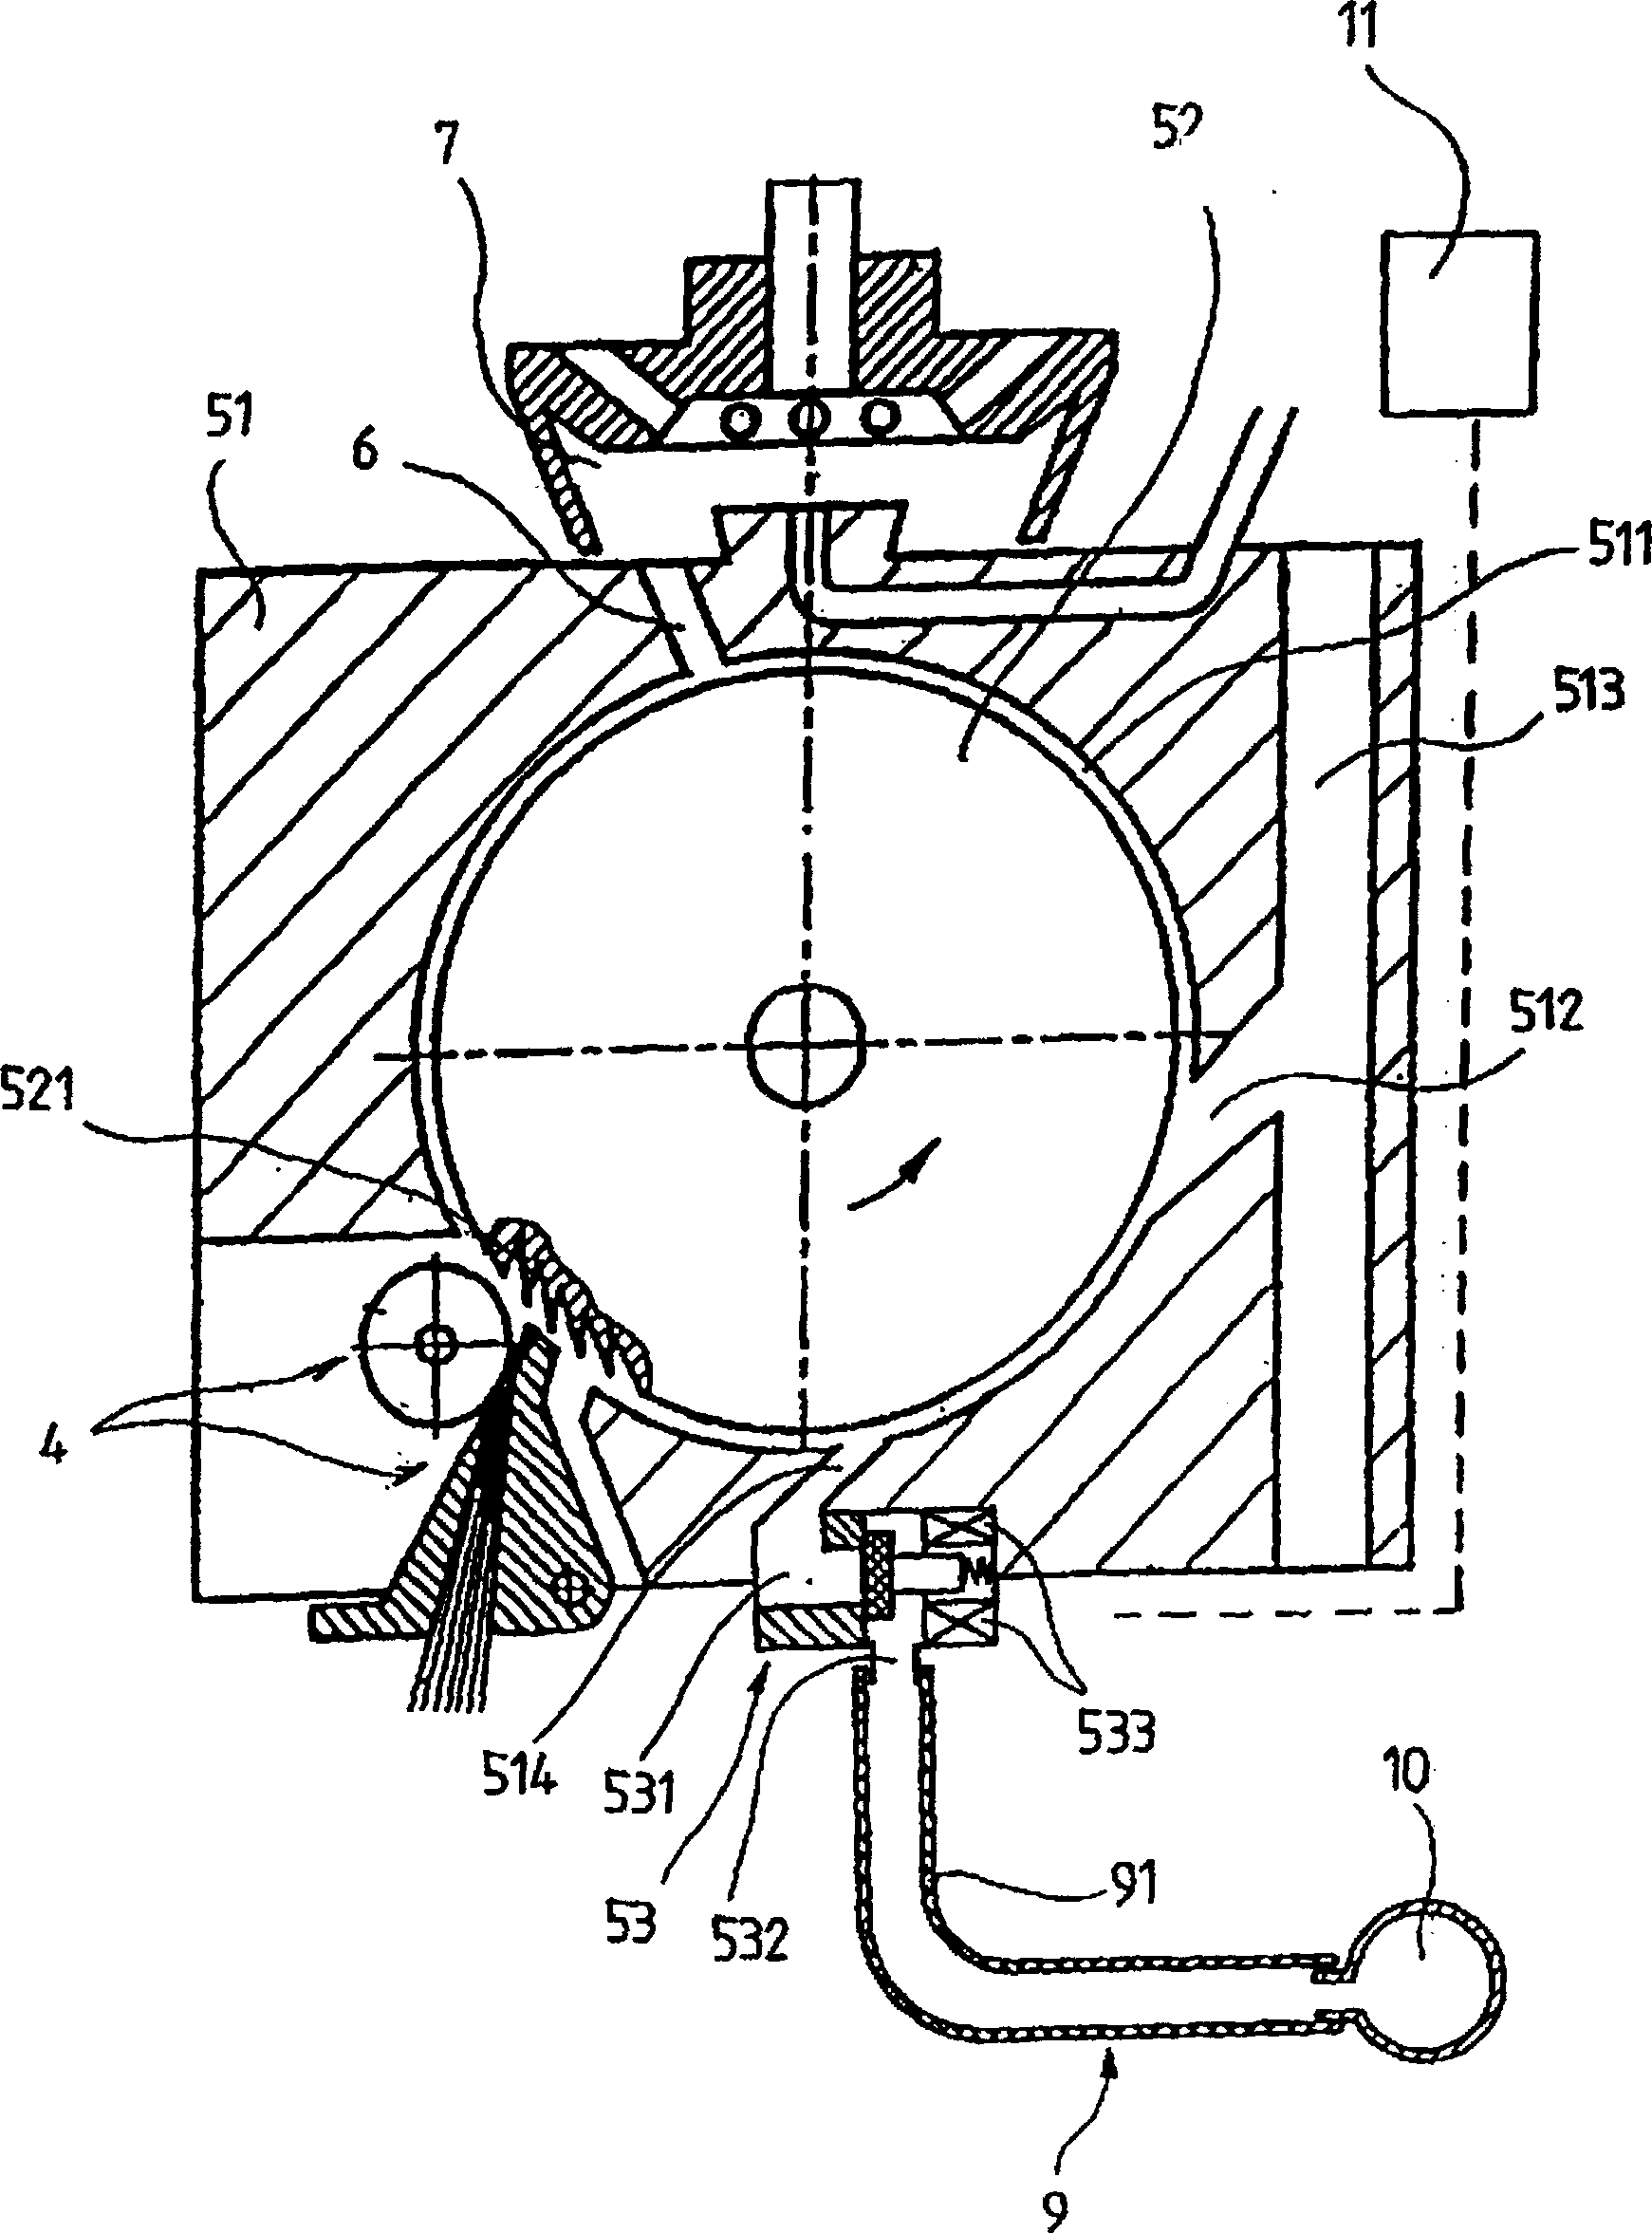 Rotor spinning machine